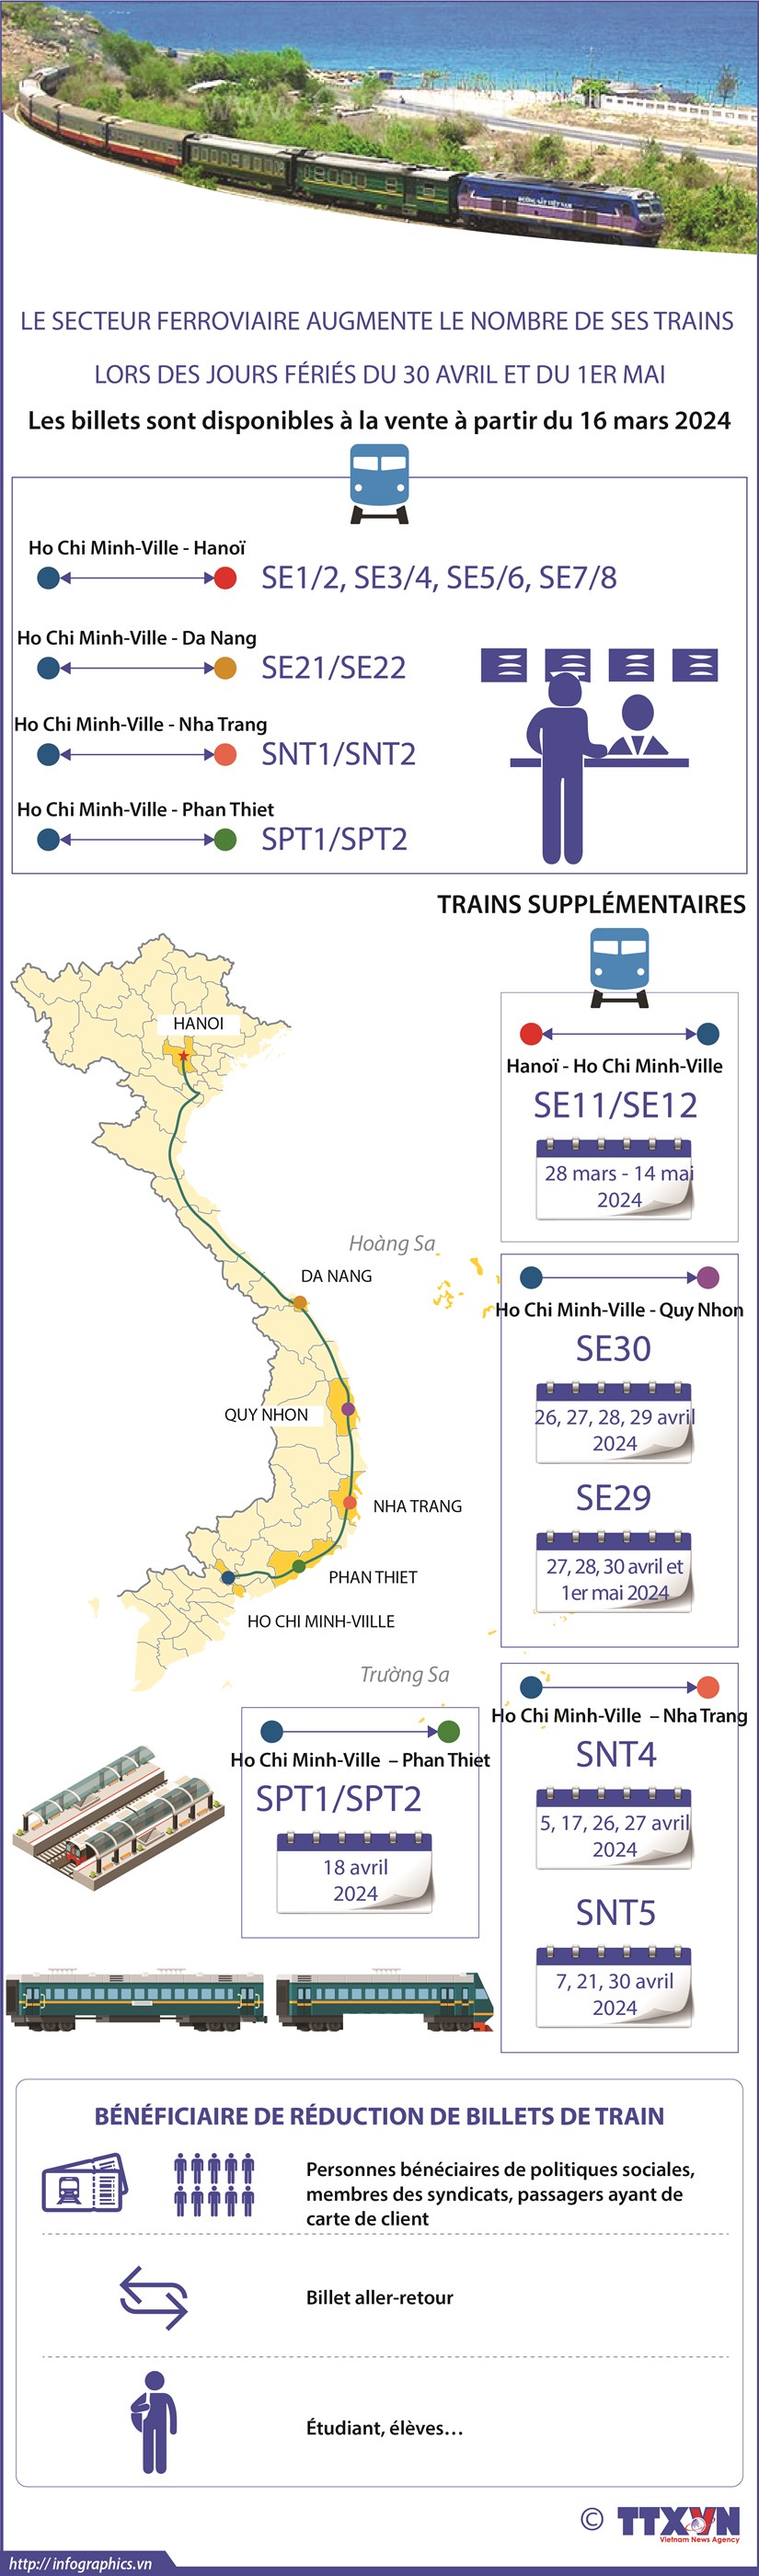 Le secteur ferroviaire augmente le nombre de ses trains lors des jours feries du 30 avril et du 1er mai hinh anh 1